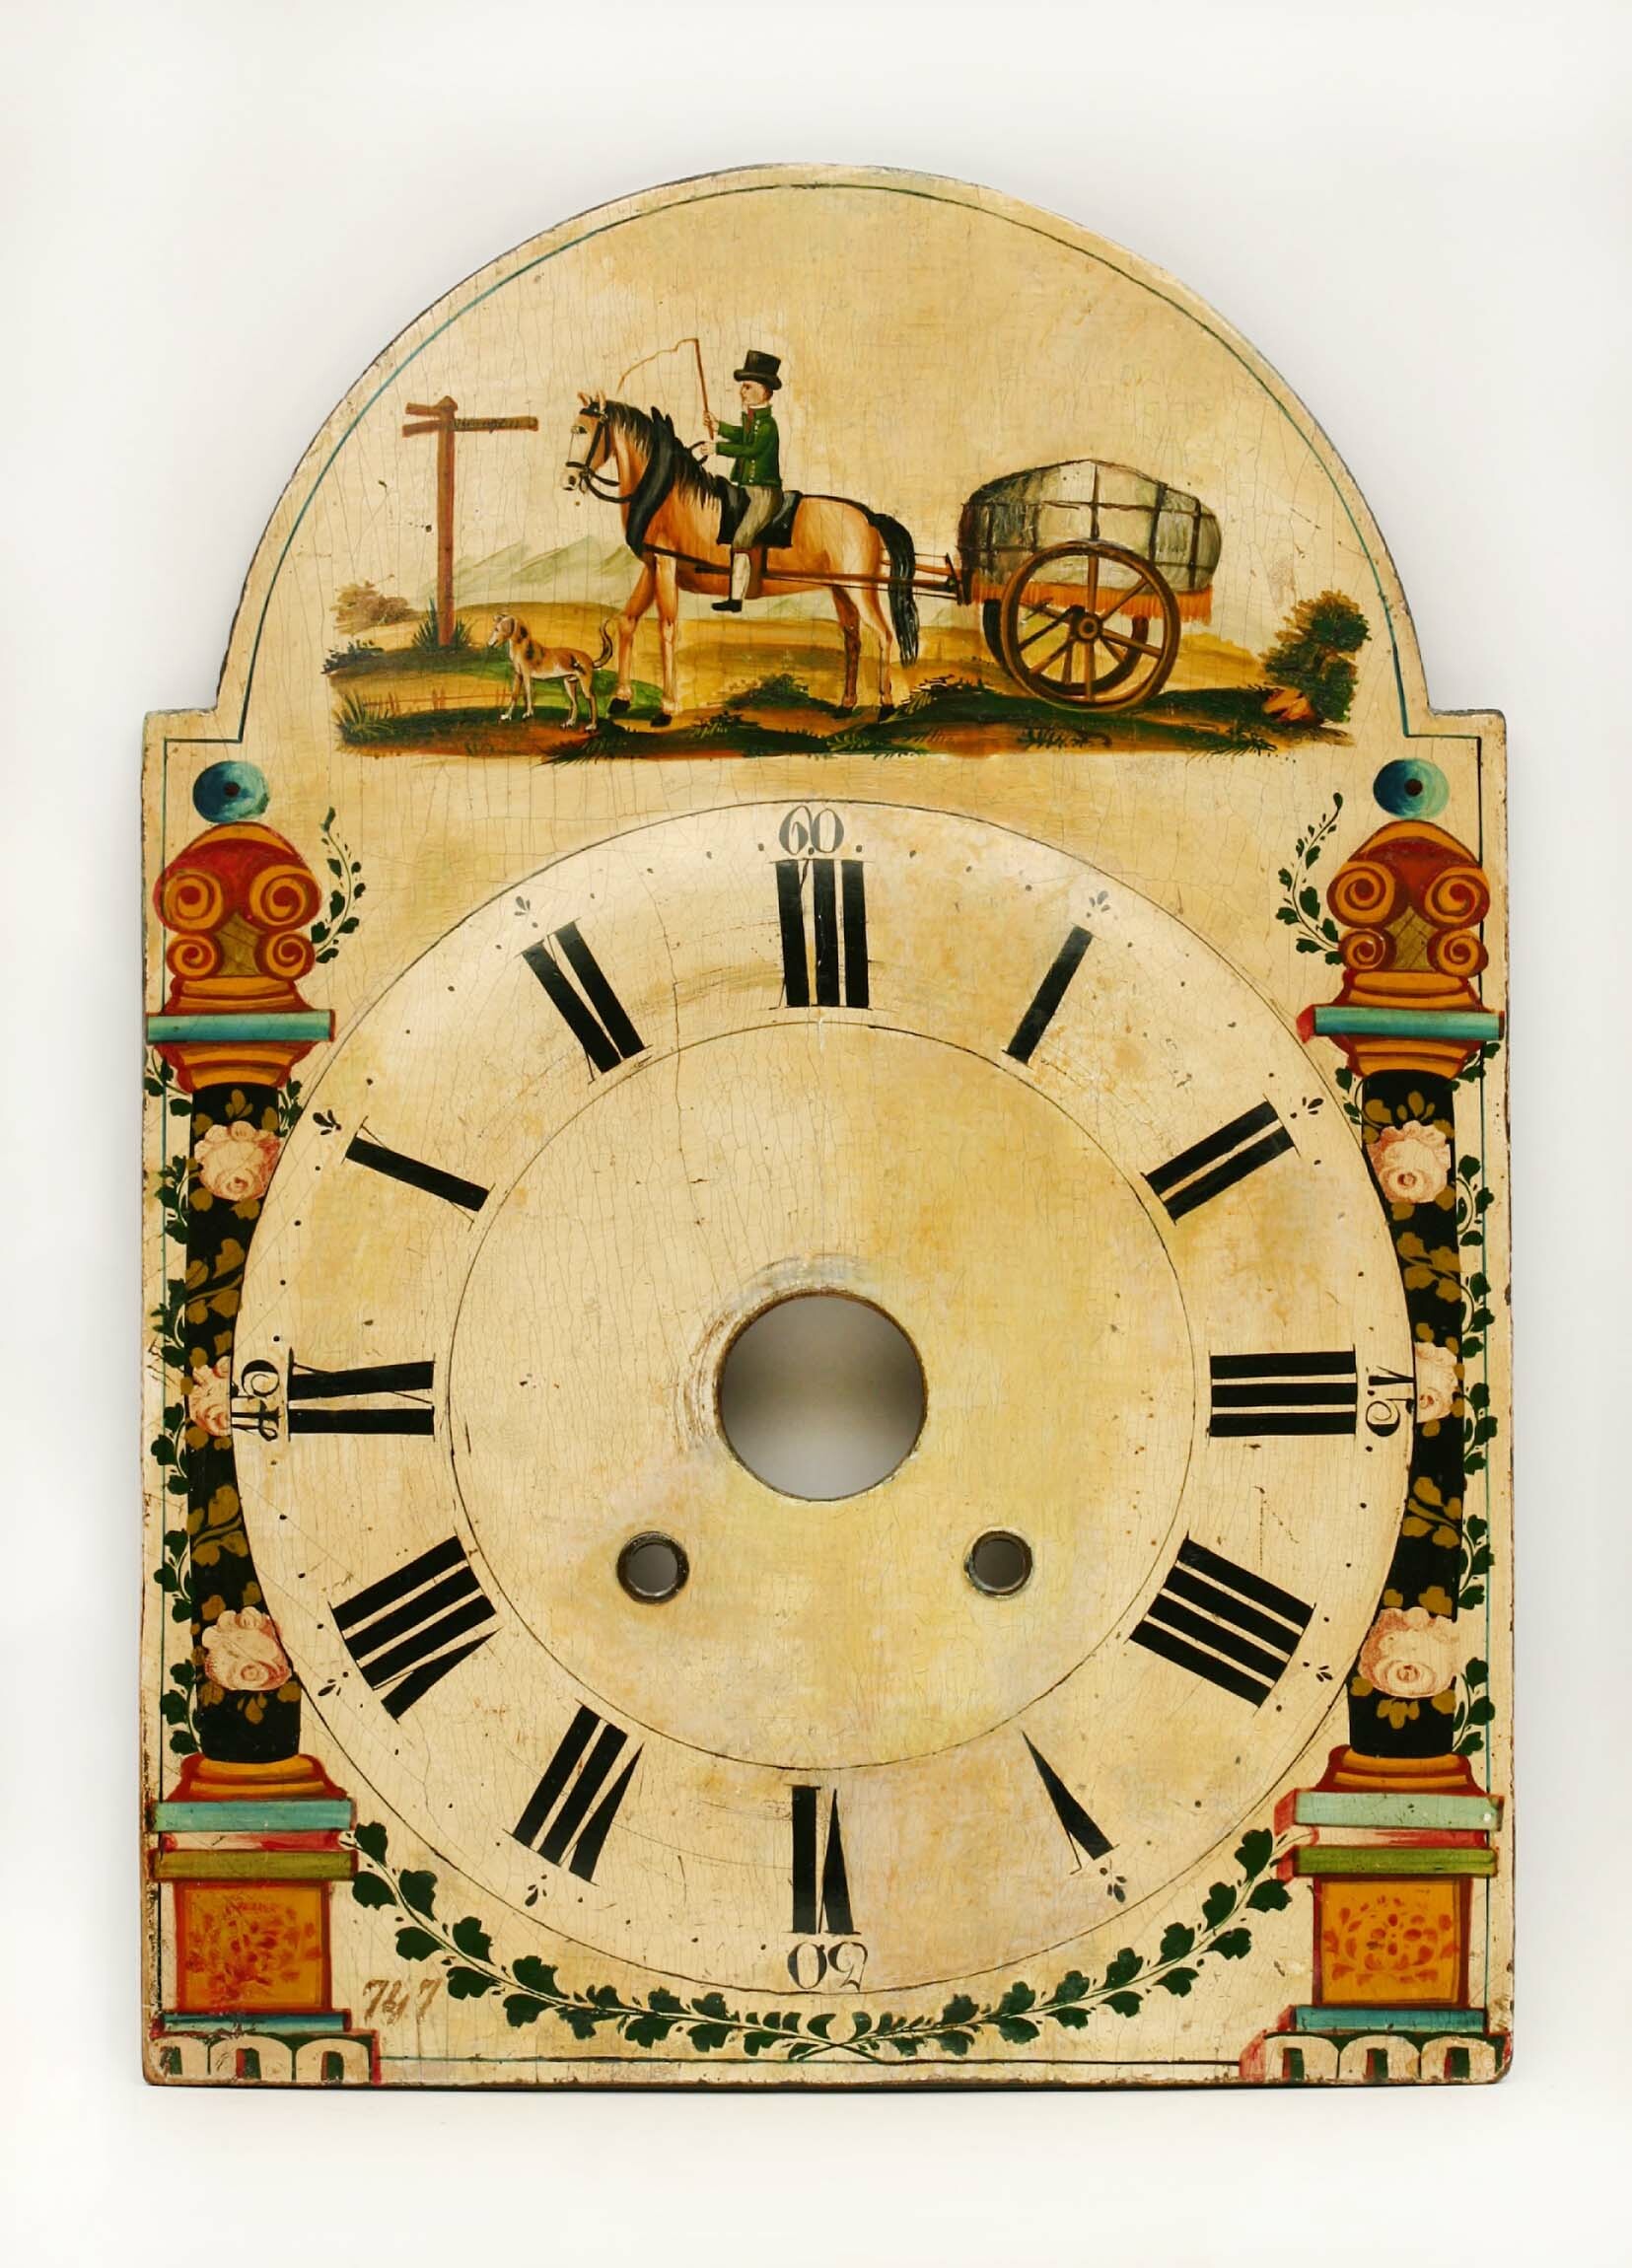 Lackschilduhr, Furtwangen, Mitte 19. Jahrhundert (Deutsches Uhrenmuseum CC BY-SA)